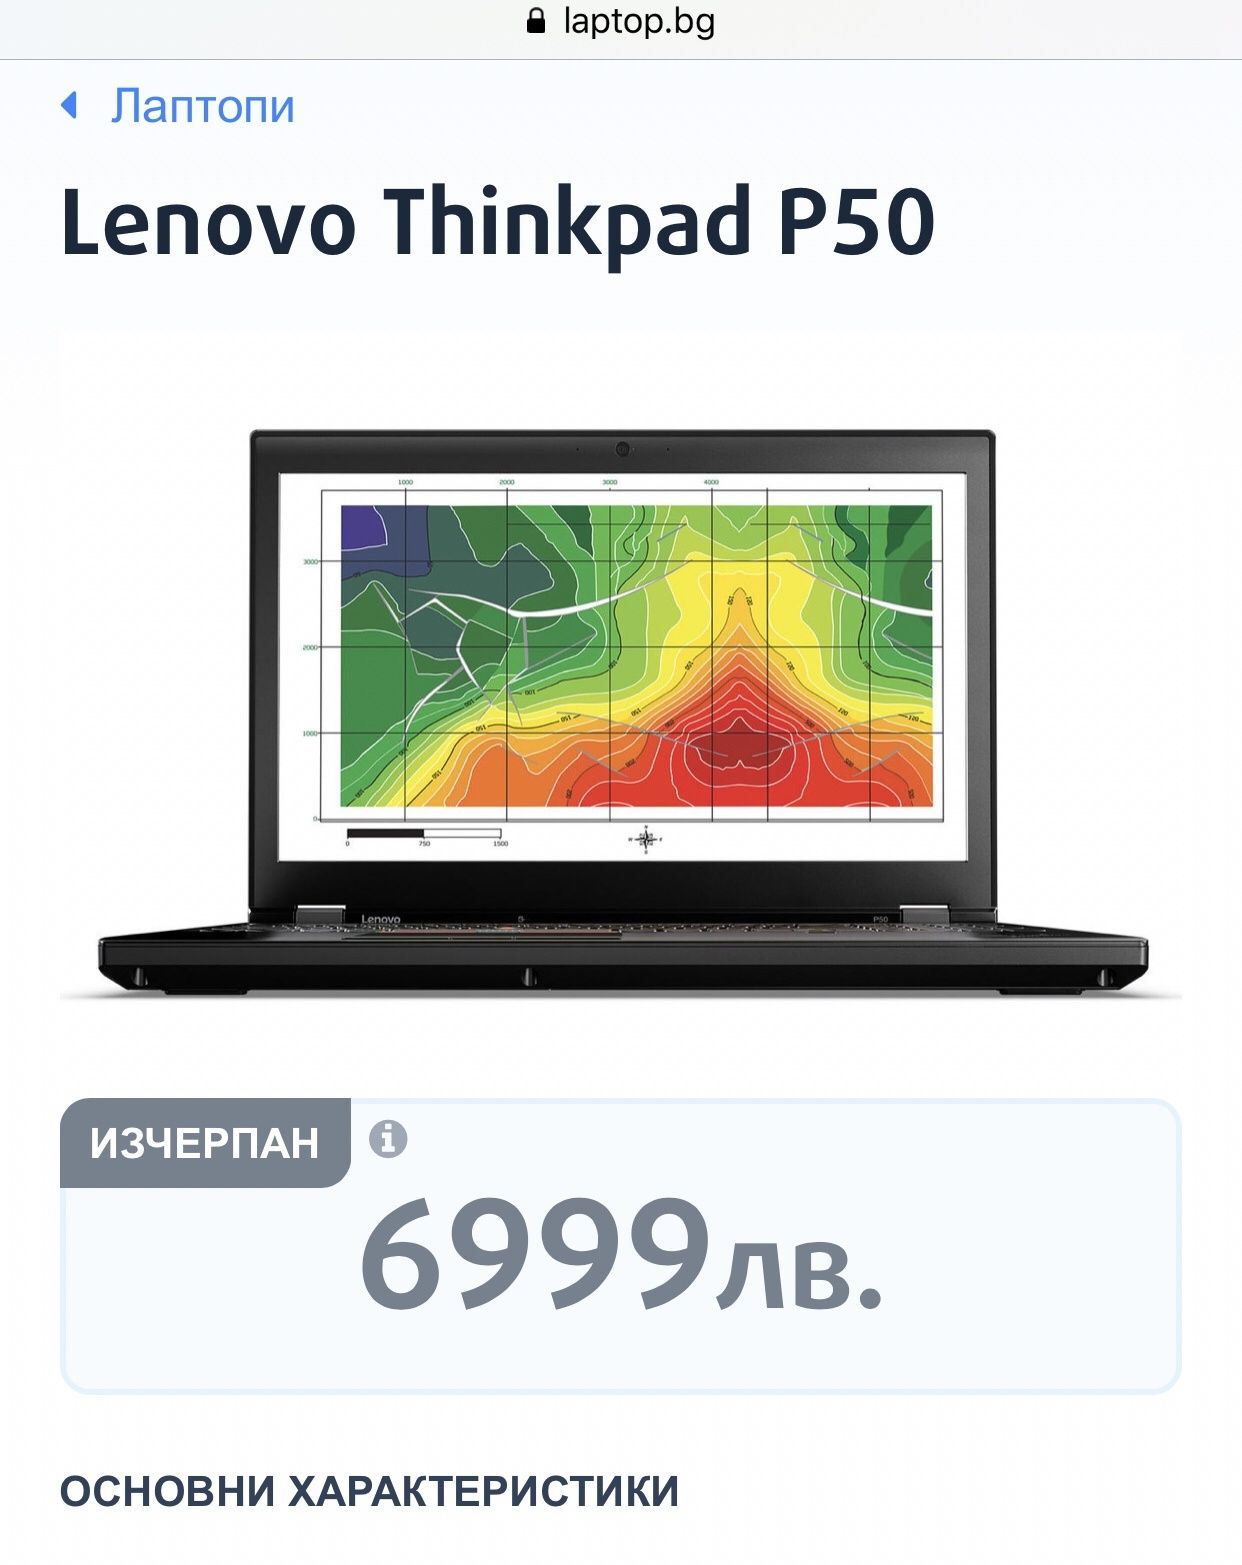 Lenovo Thinkpad p50